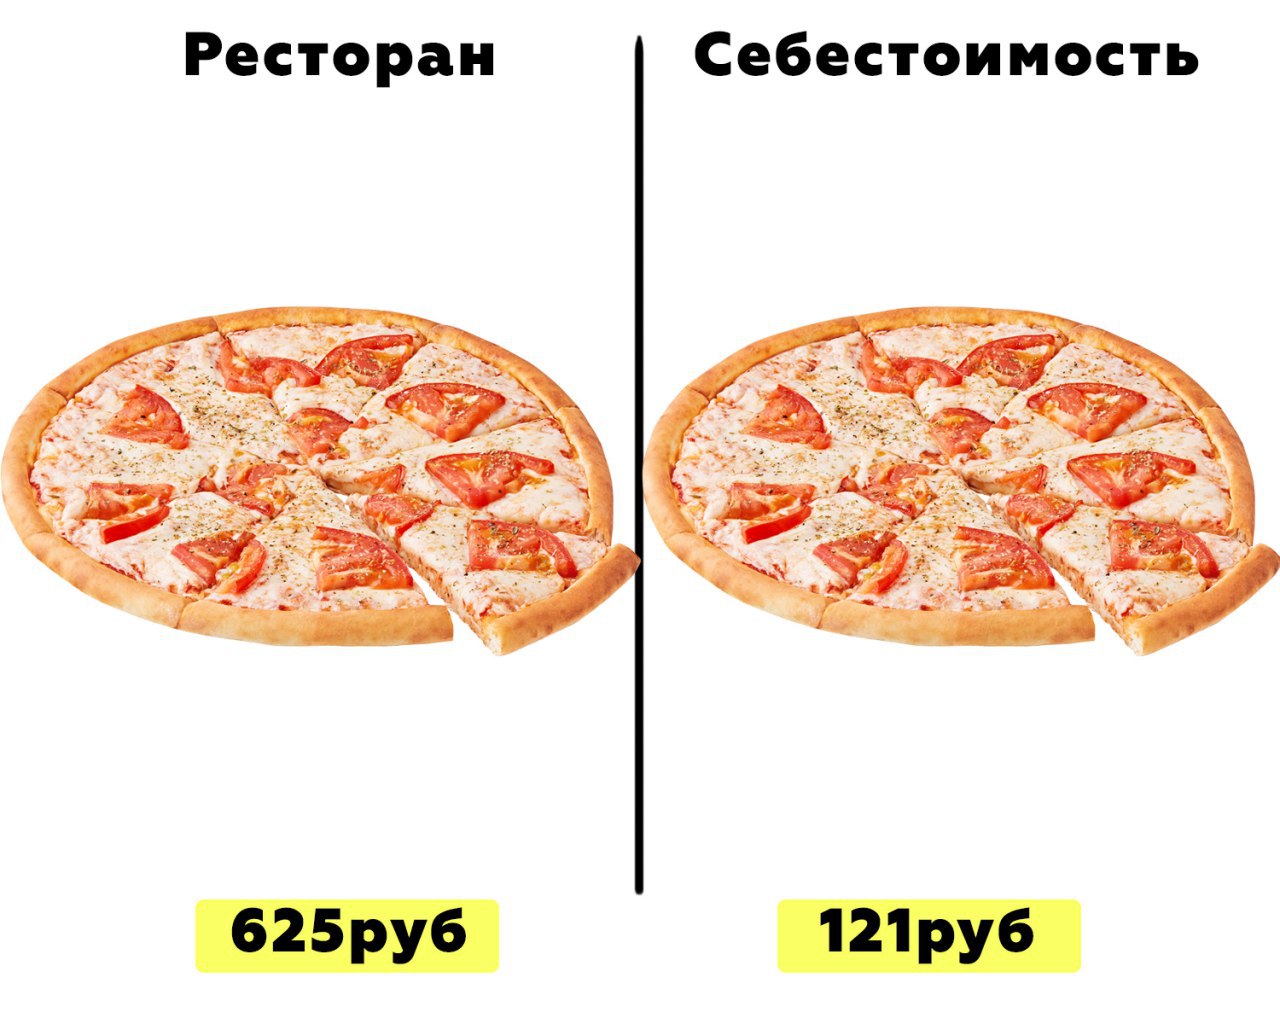 технологическая карта пицца маргарита фото 102